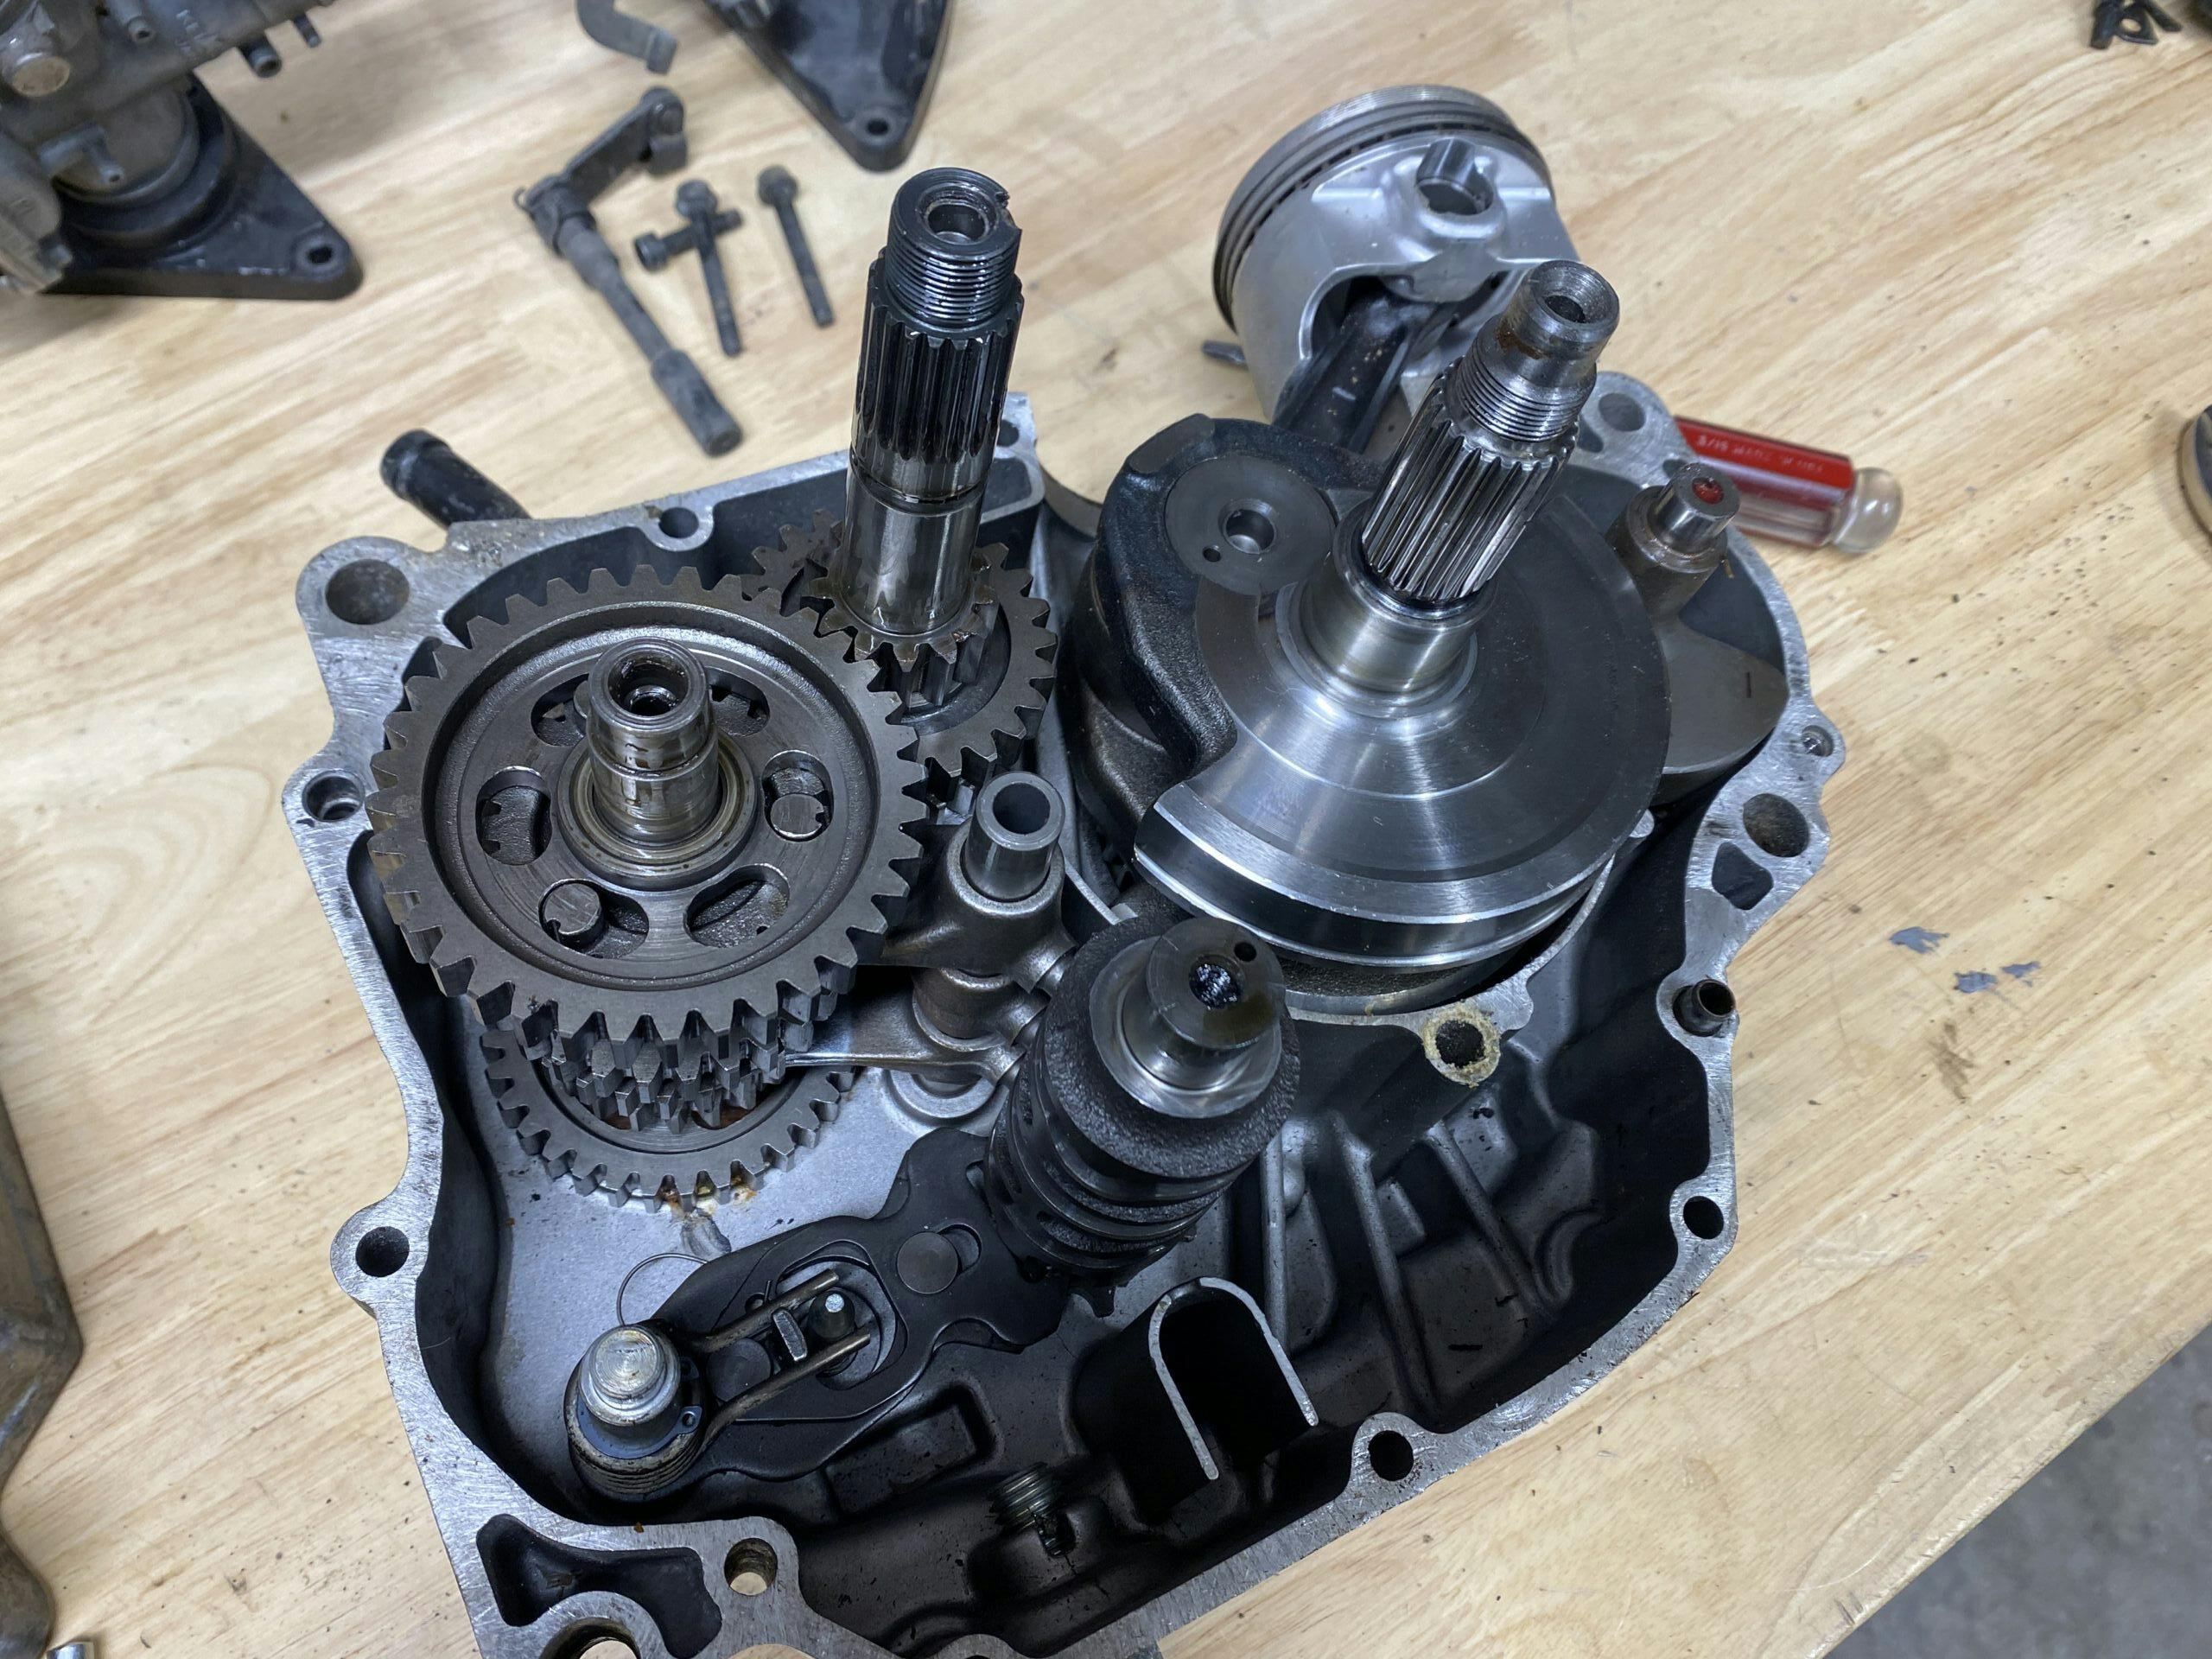 Honda XR250R engine half apart